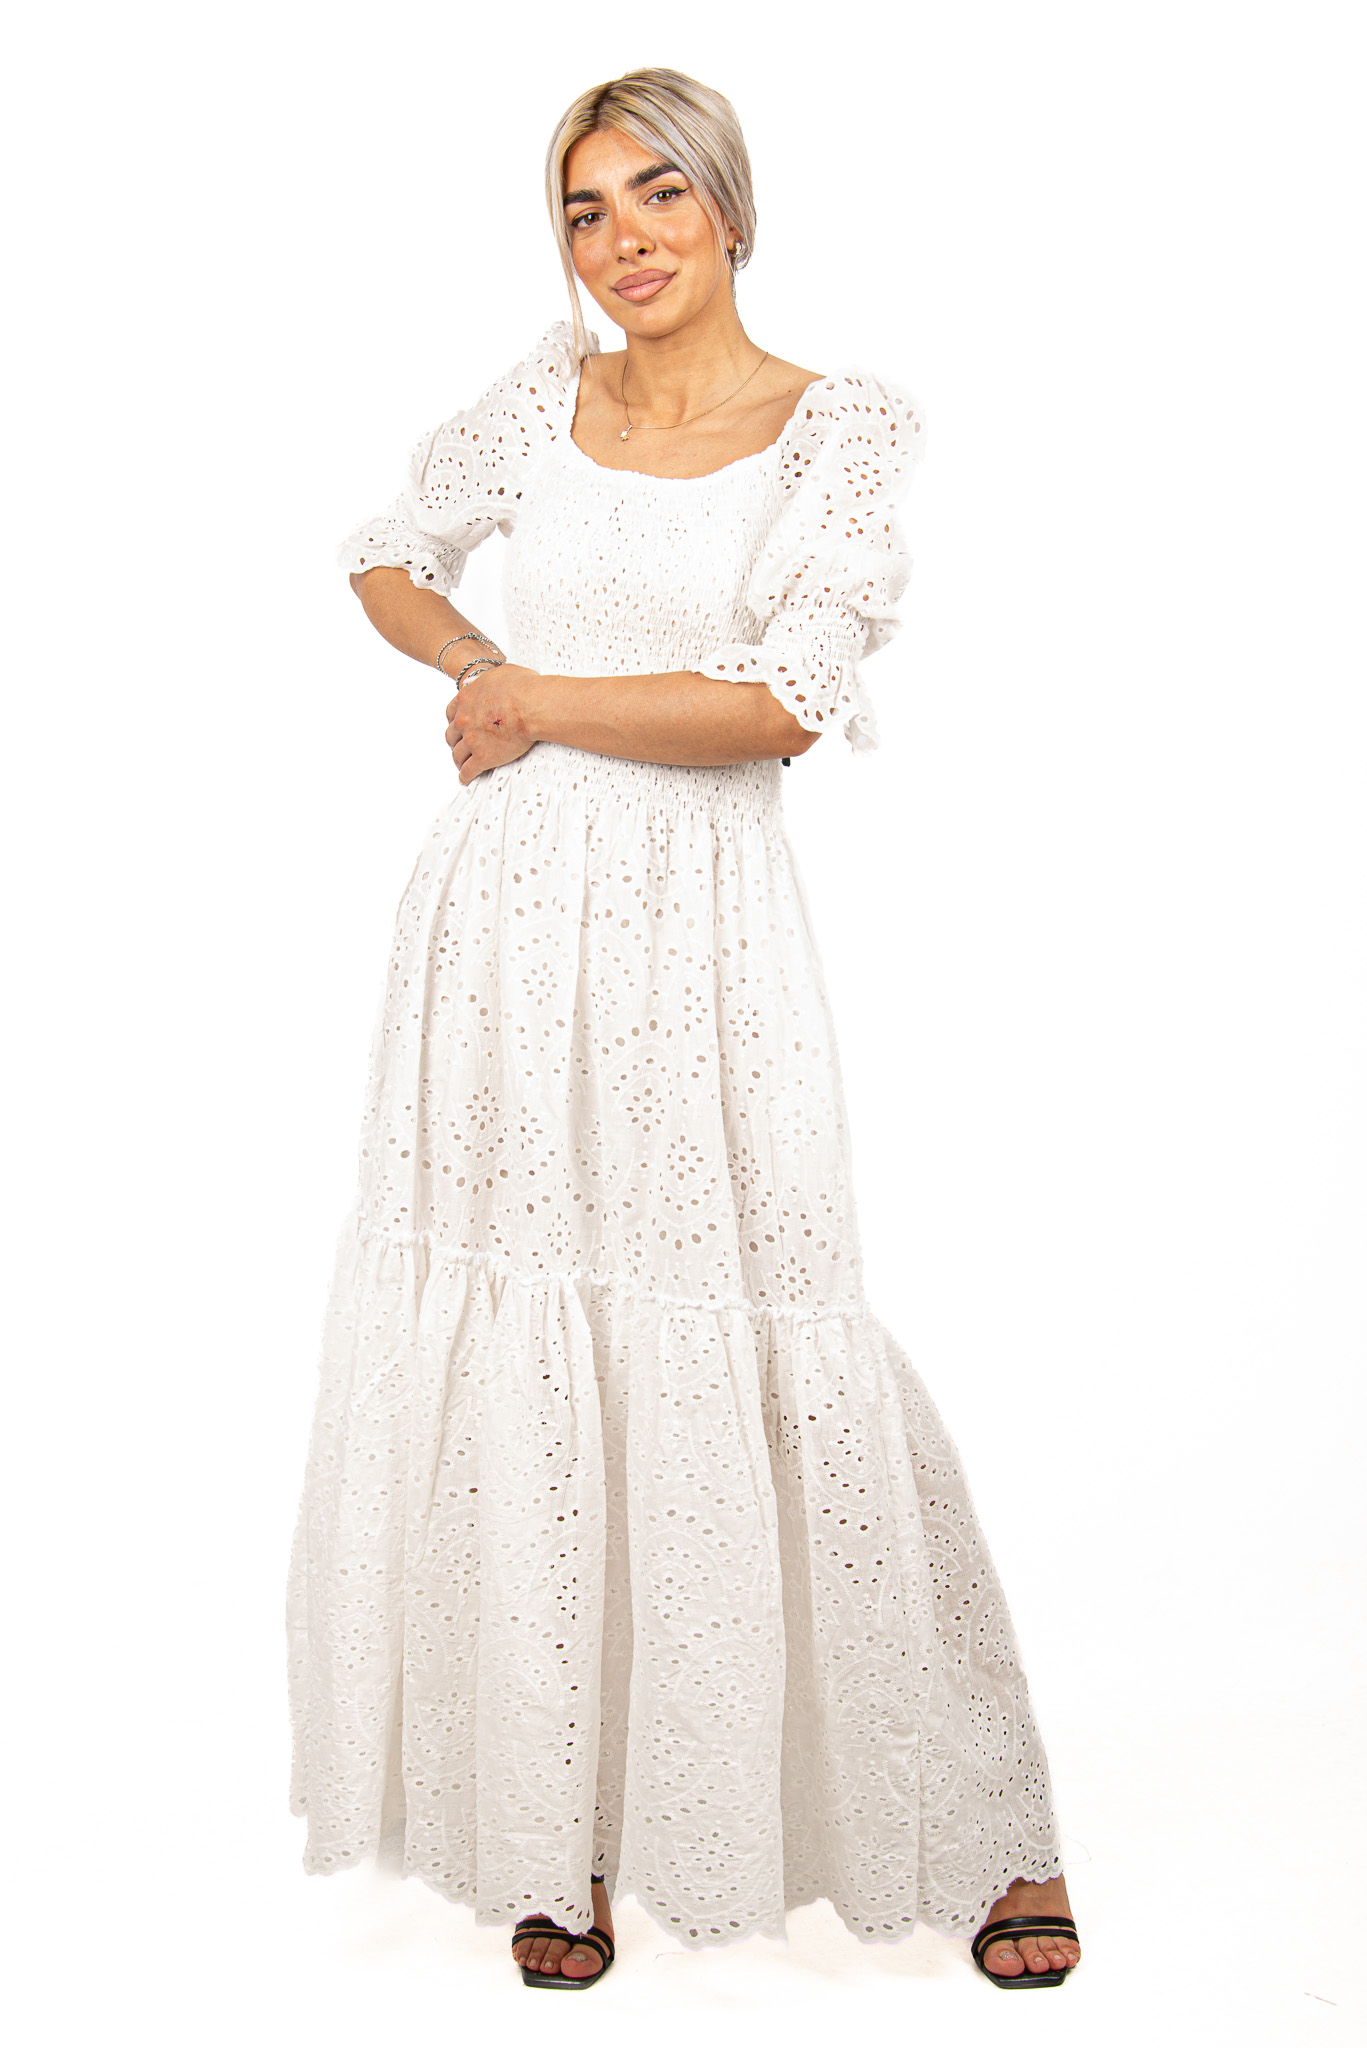 Φόρεμα Κυπούρ Δαντέλα Λευκό | EllenBoutique